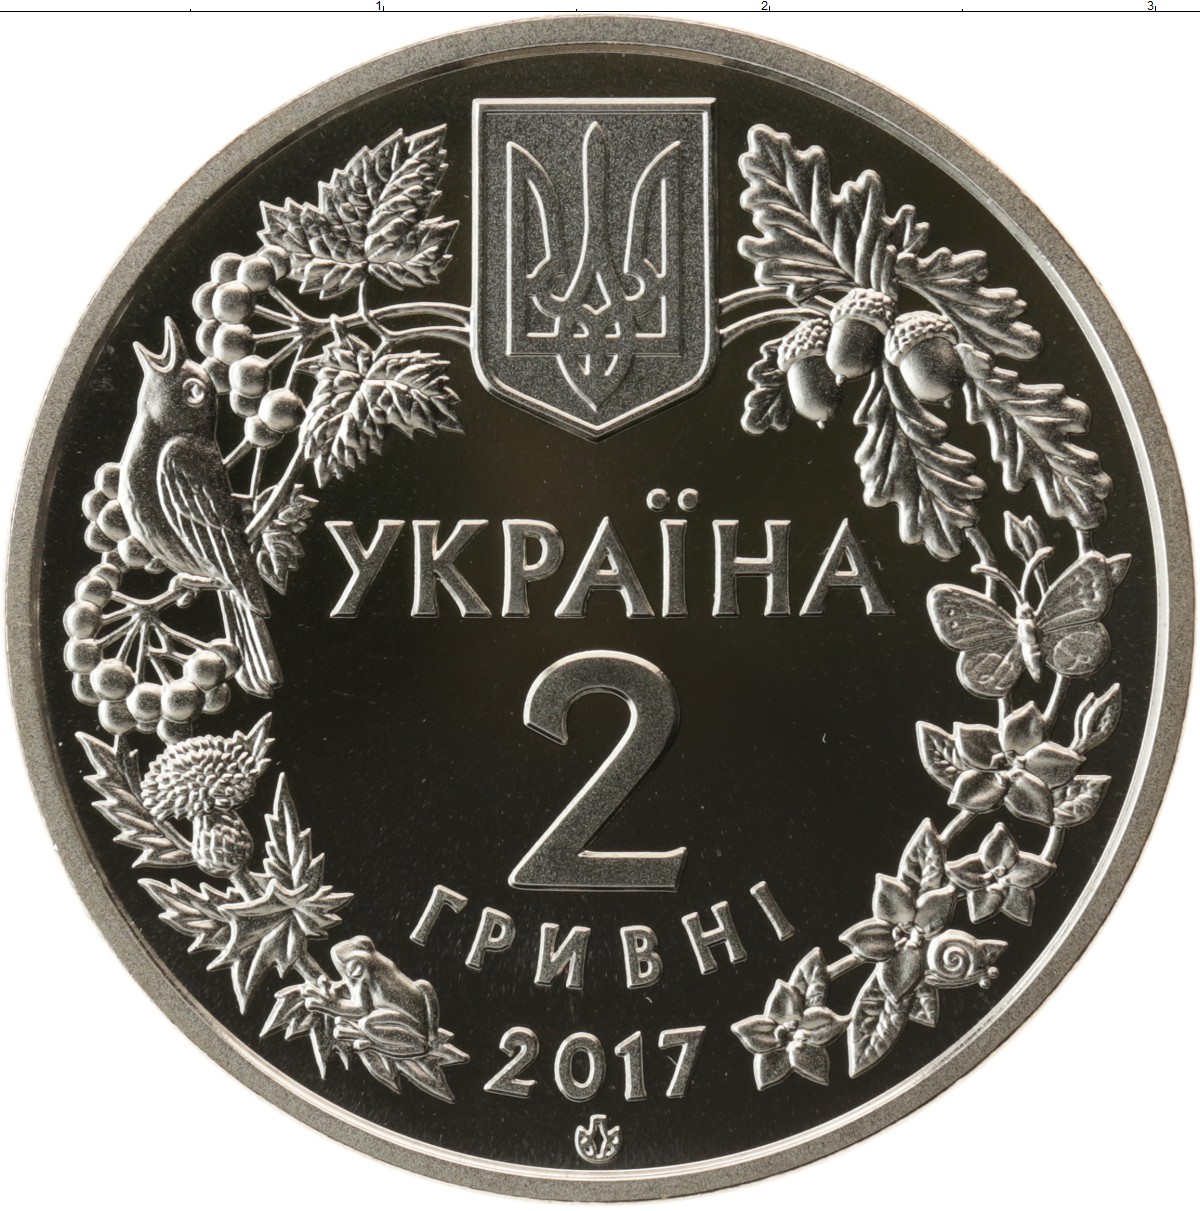 9 гривен в рублях